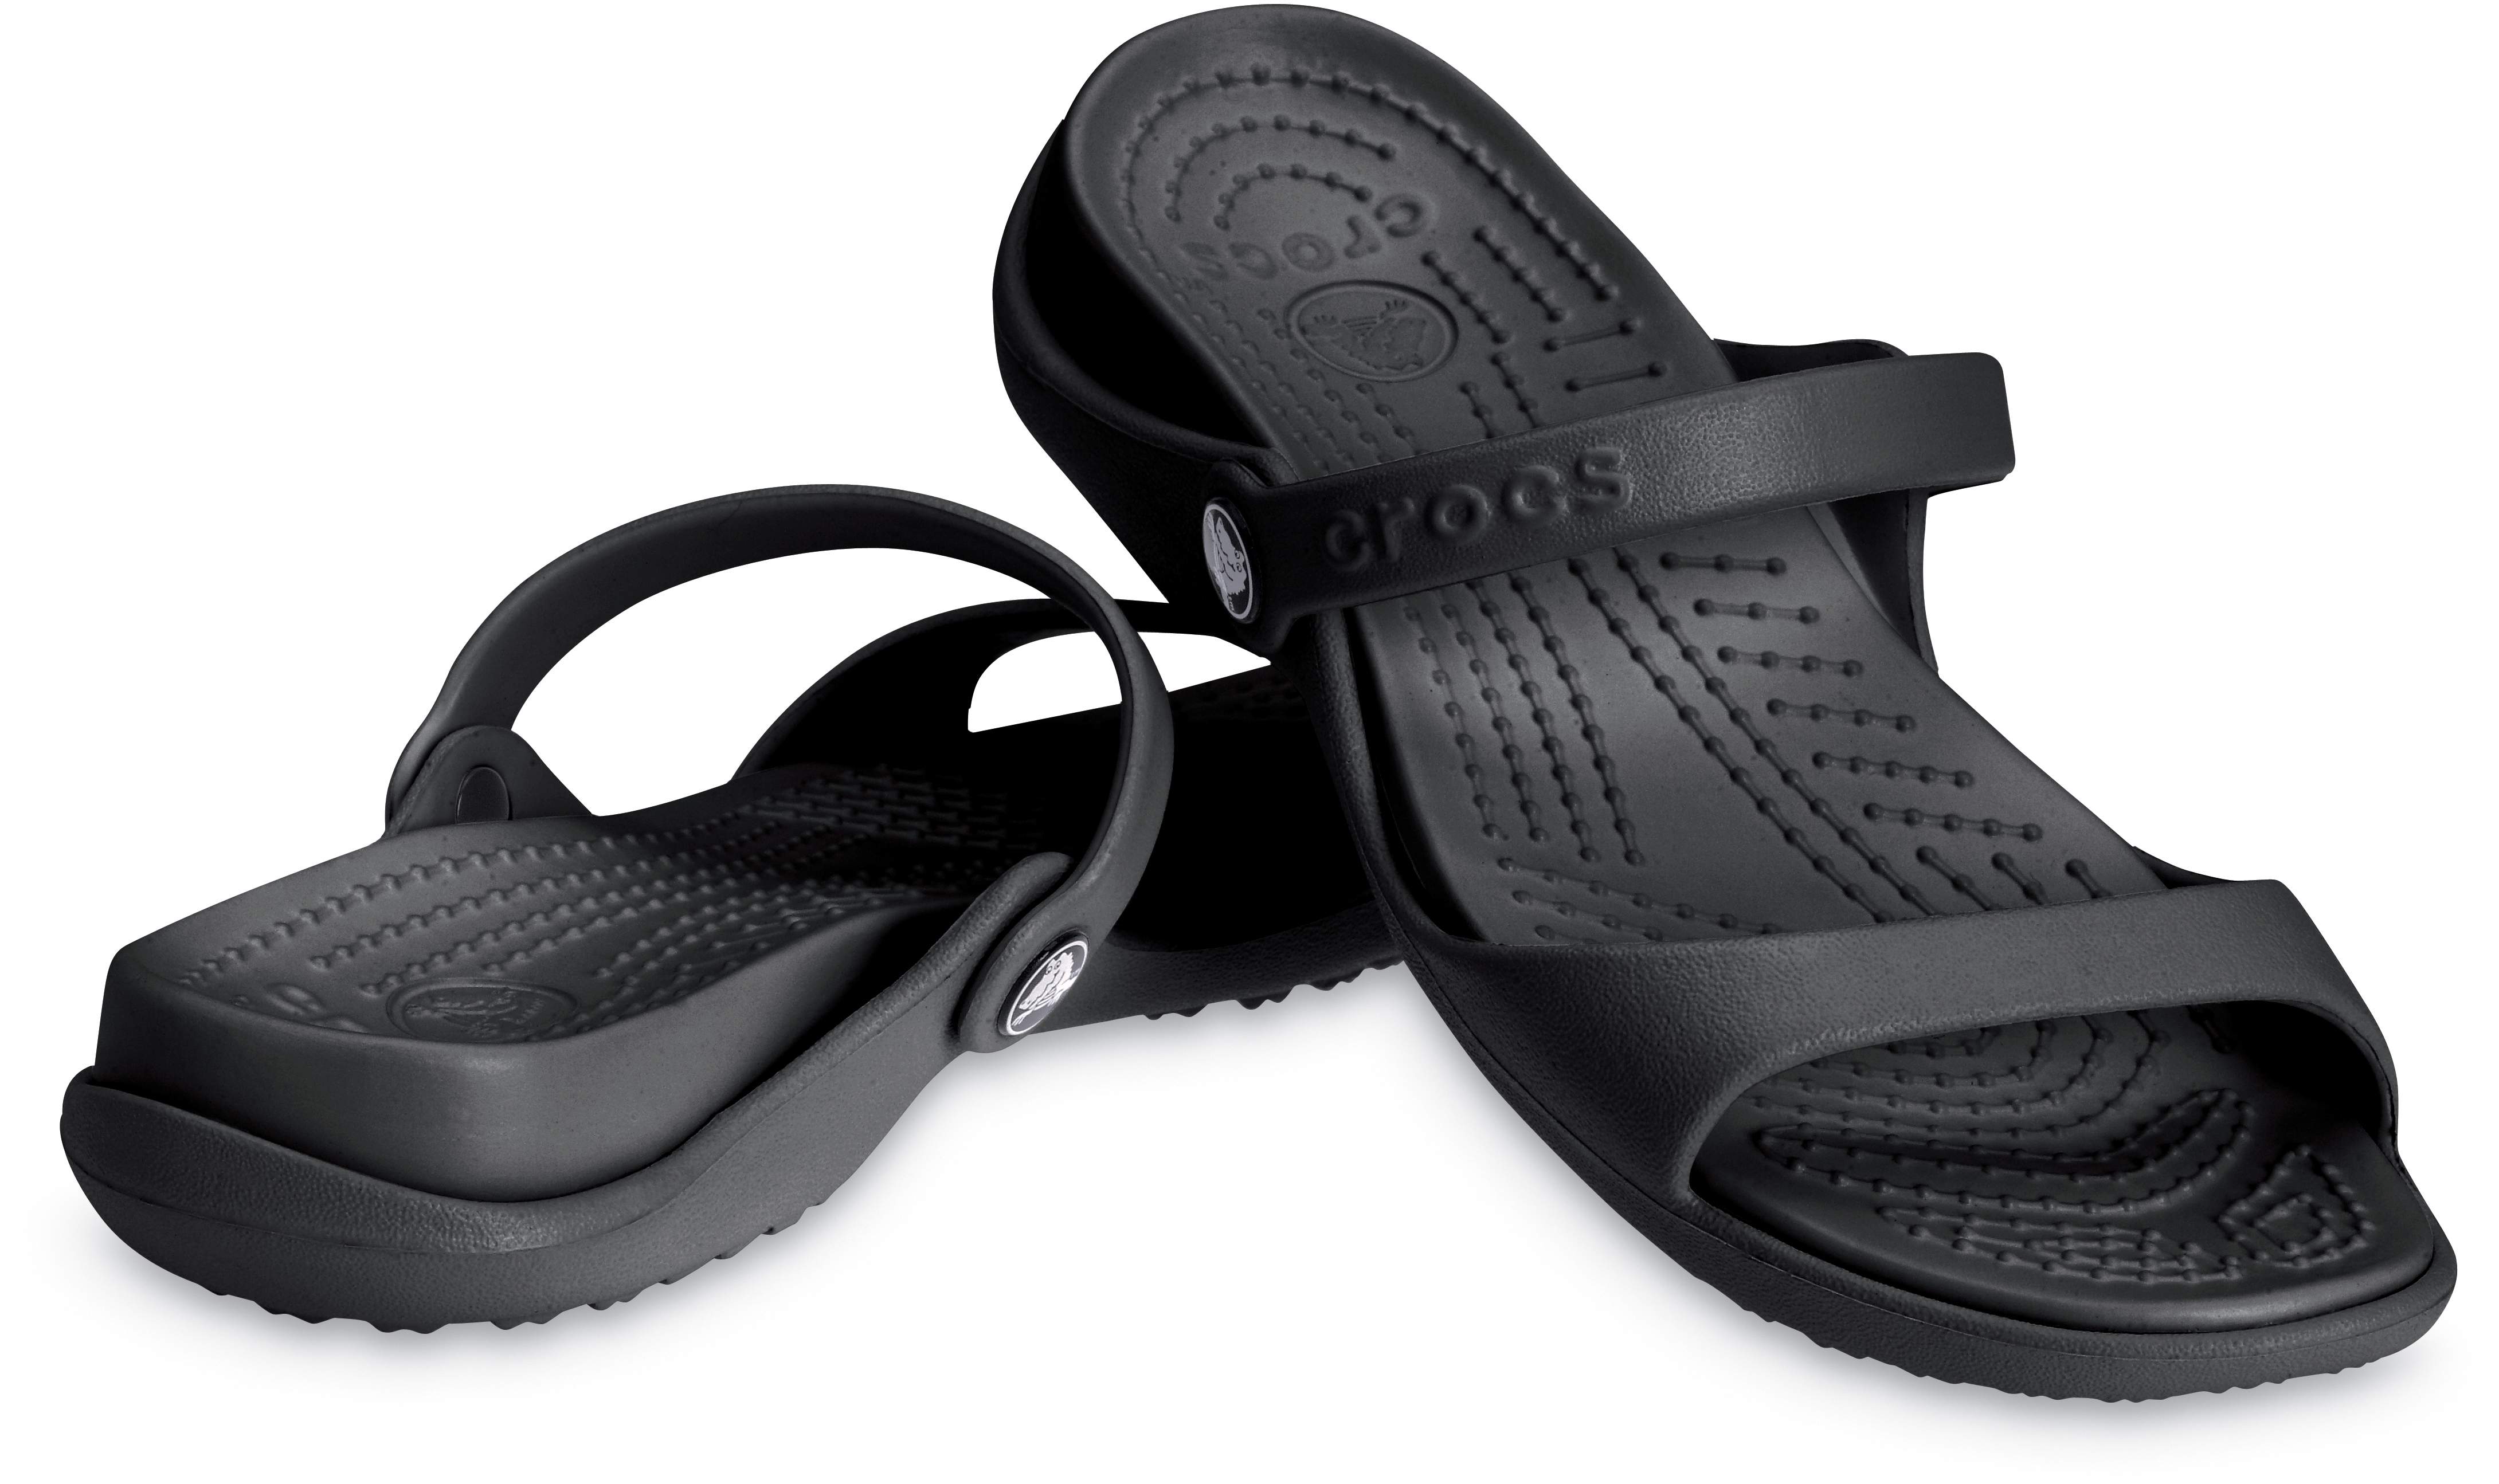 crocs women's cleo sandal